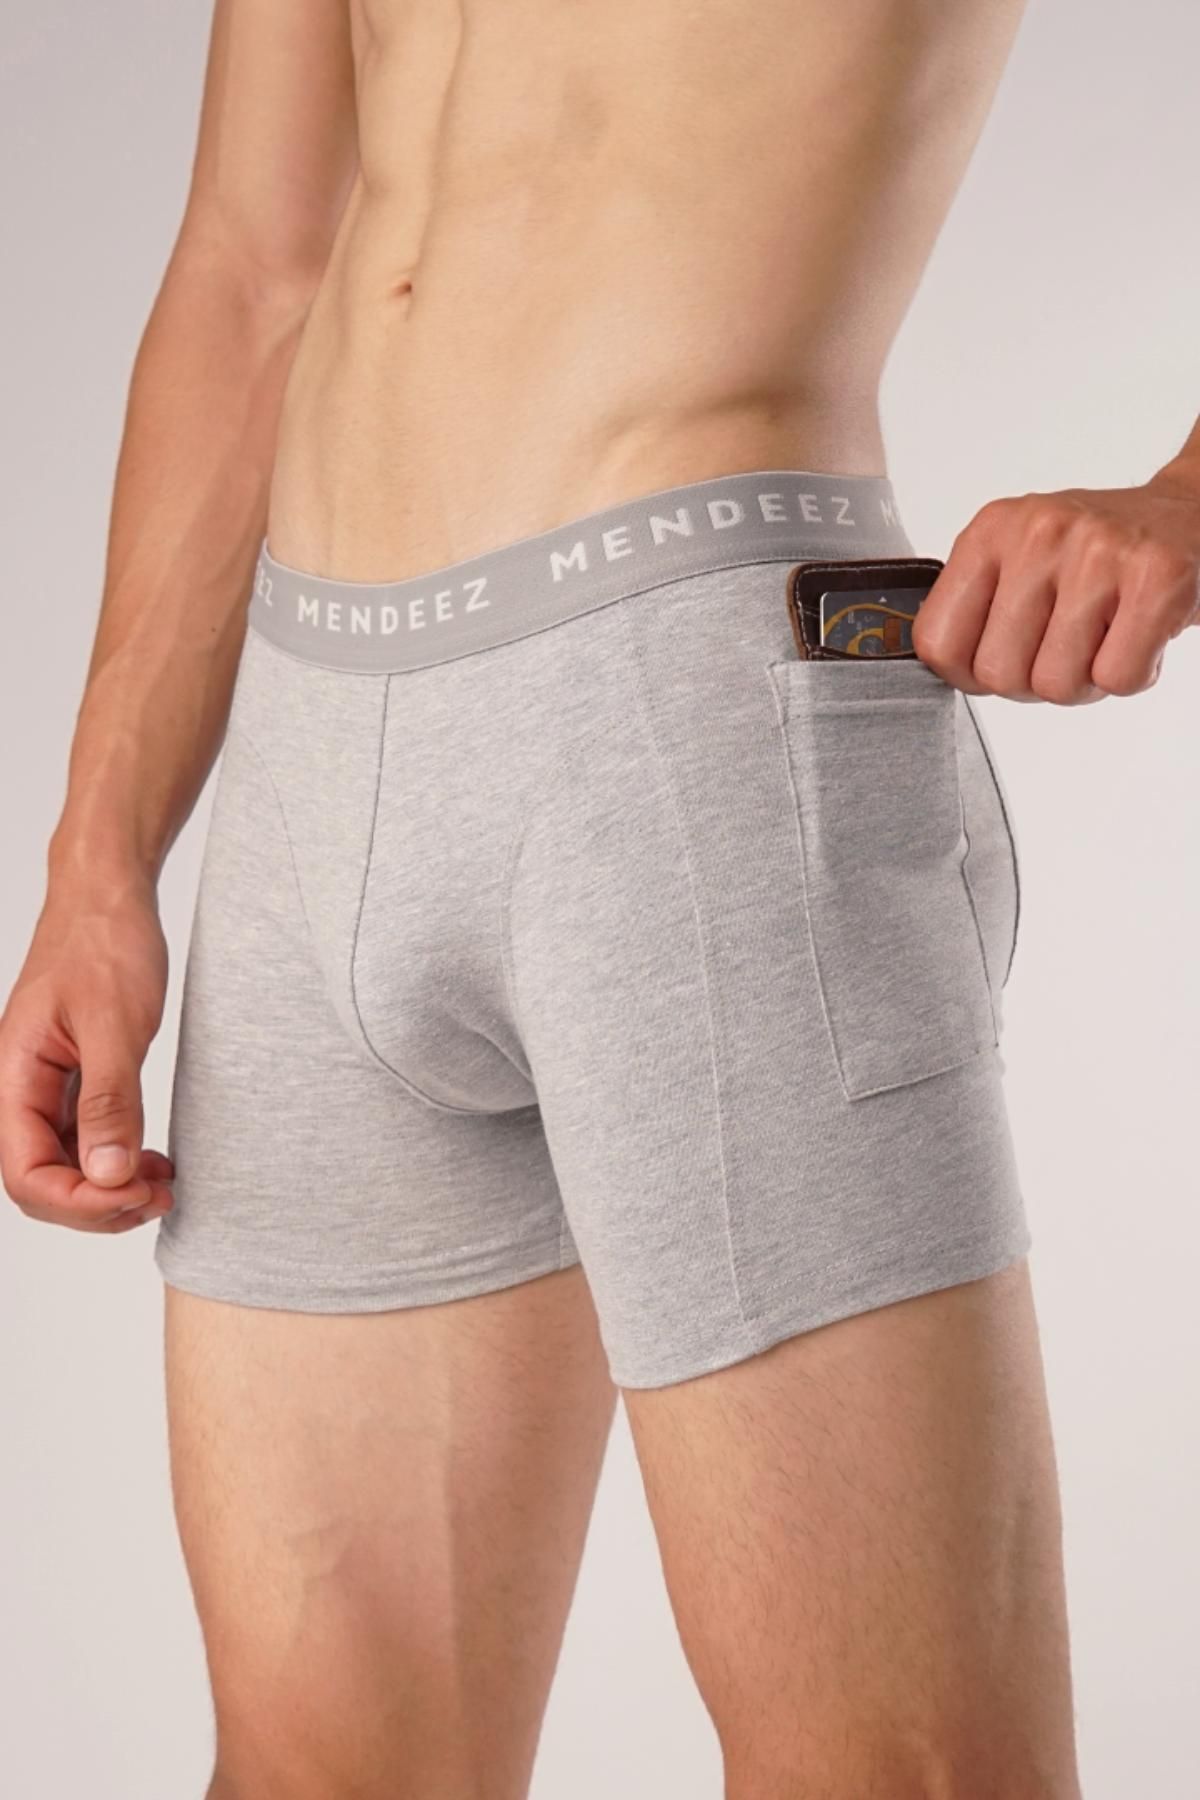 MENDEEZ Pocket Boxer Briefs â€“ Heather Grey Heather Grey Men Underwears